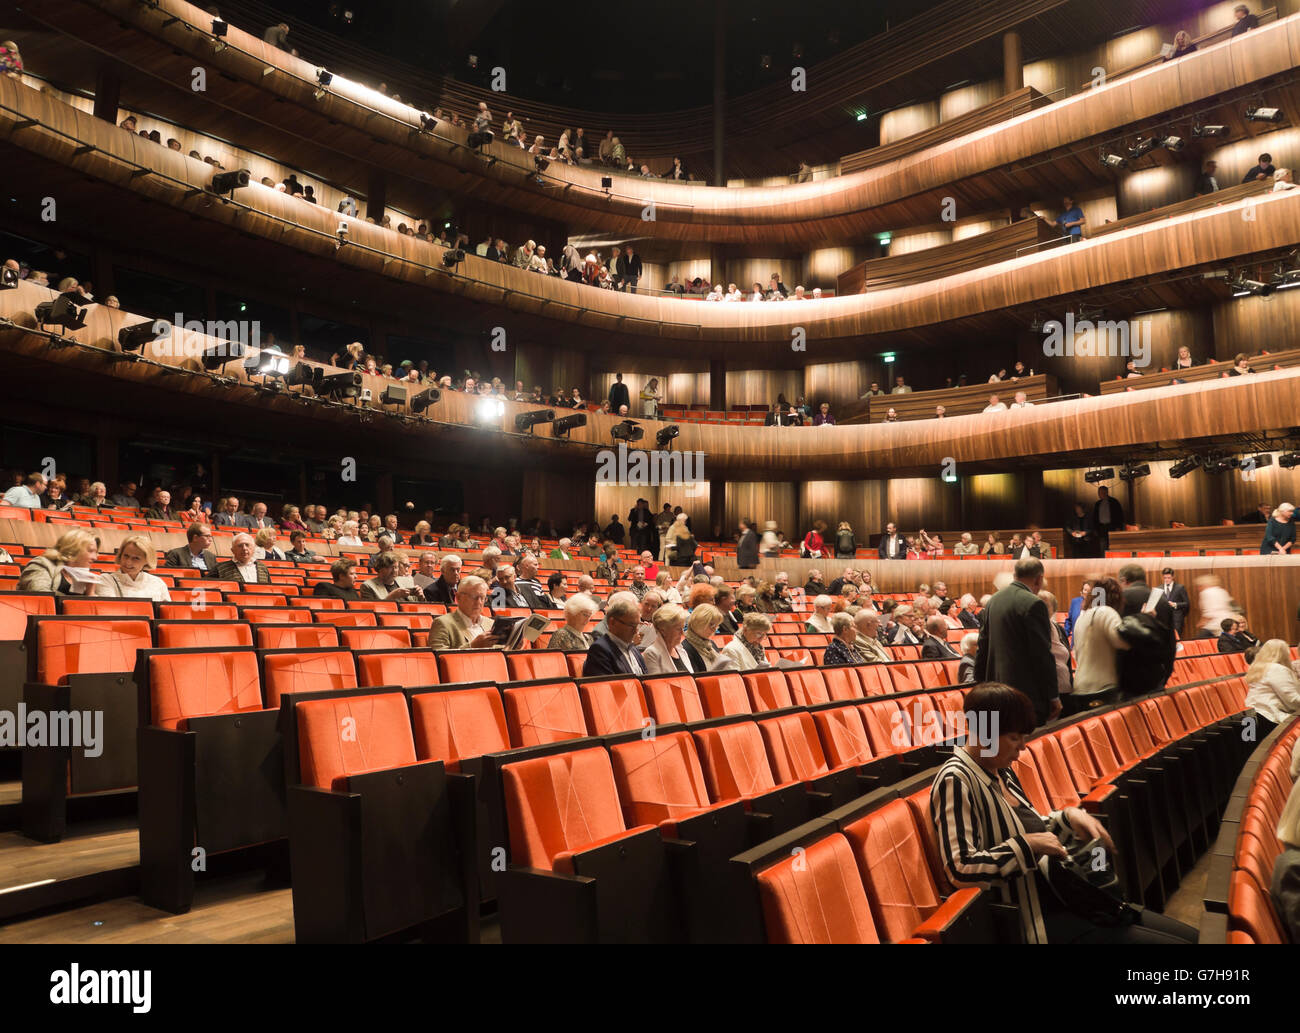 Oslo, Norvège, le célèbre Opéra national par les architectes Snohetta, intérieur avec des sièges de l'auditoire pour l'exécution Banque D'Images